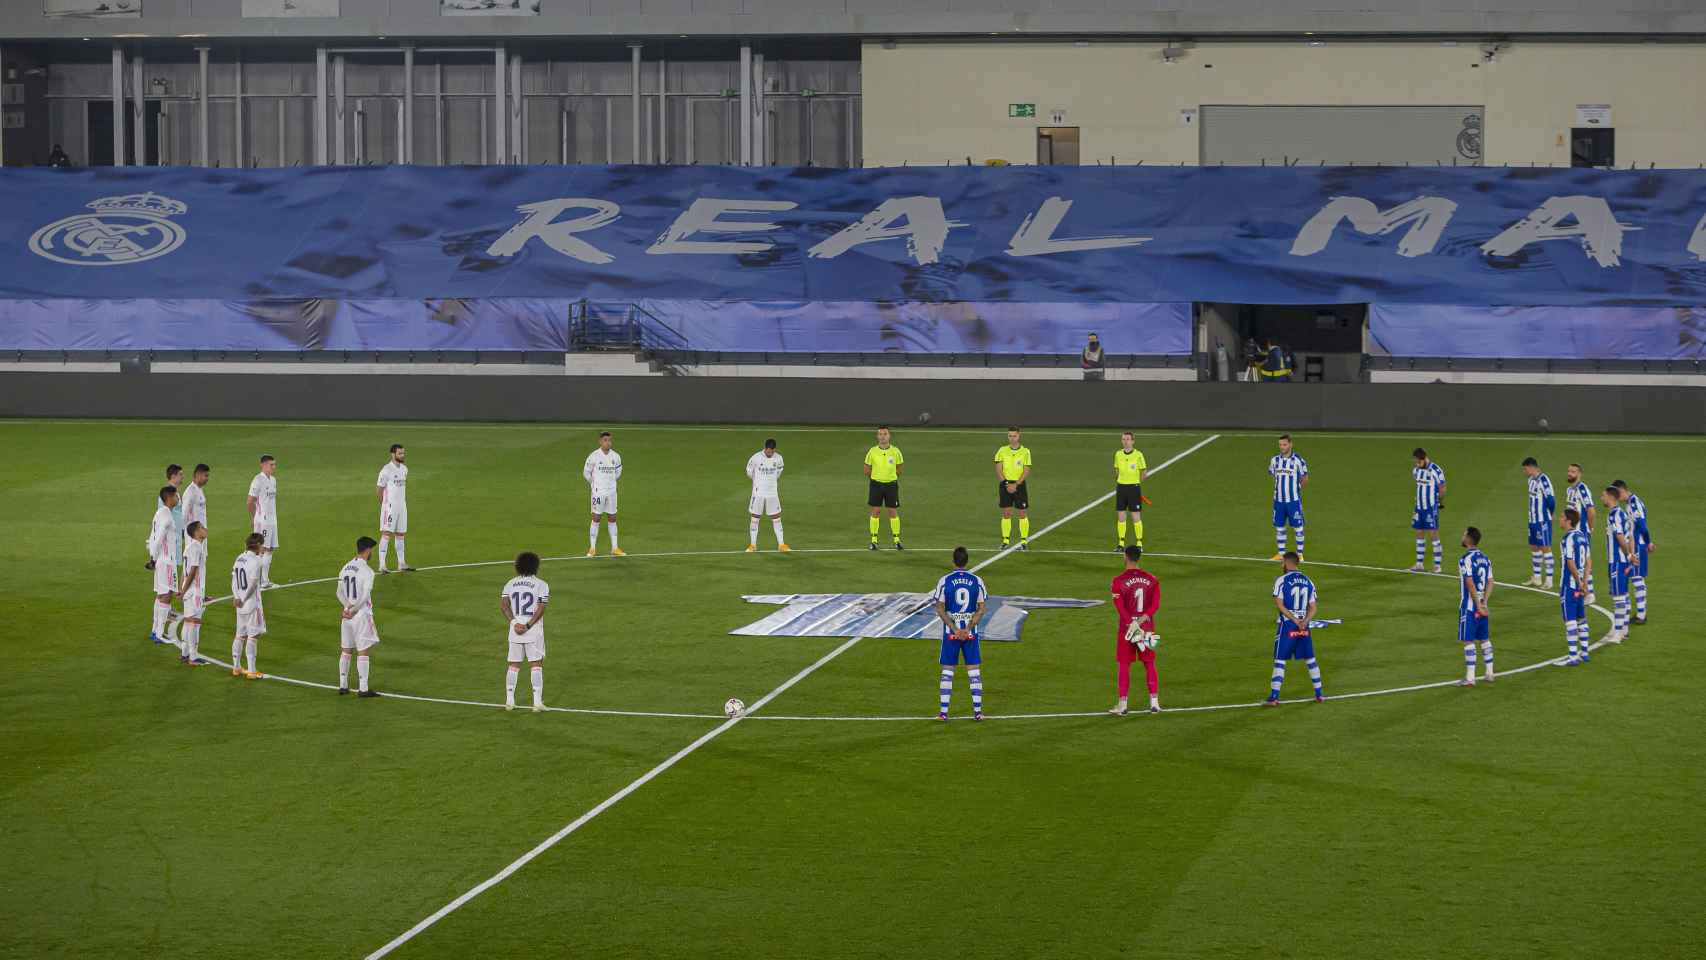 Minuto de silencio en el Real Madrid - Deportivo Alavés en memoria de Marandona